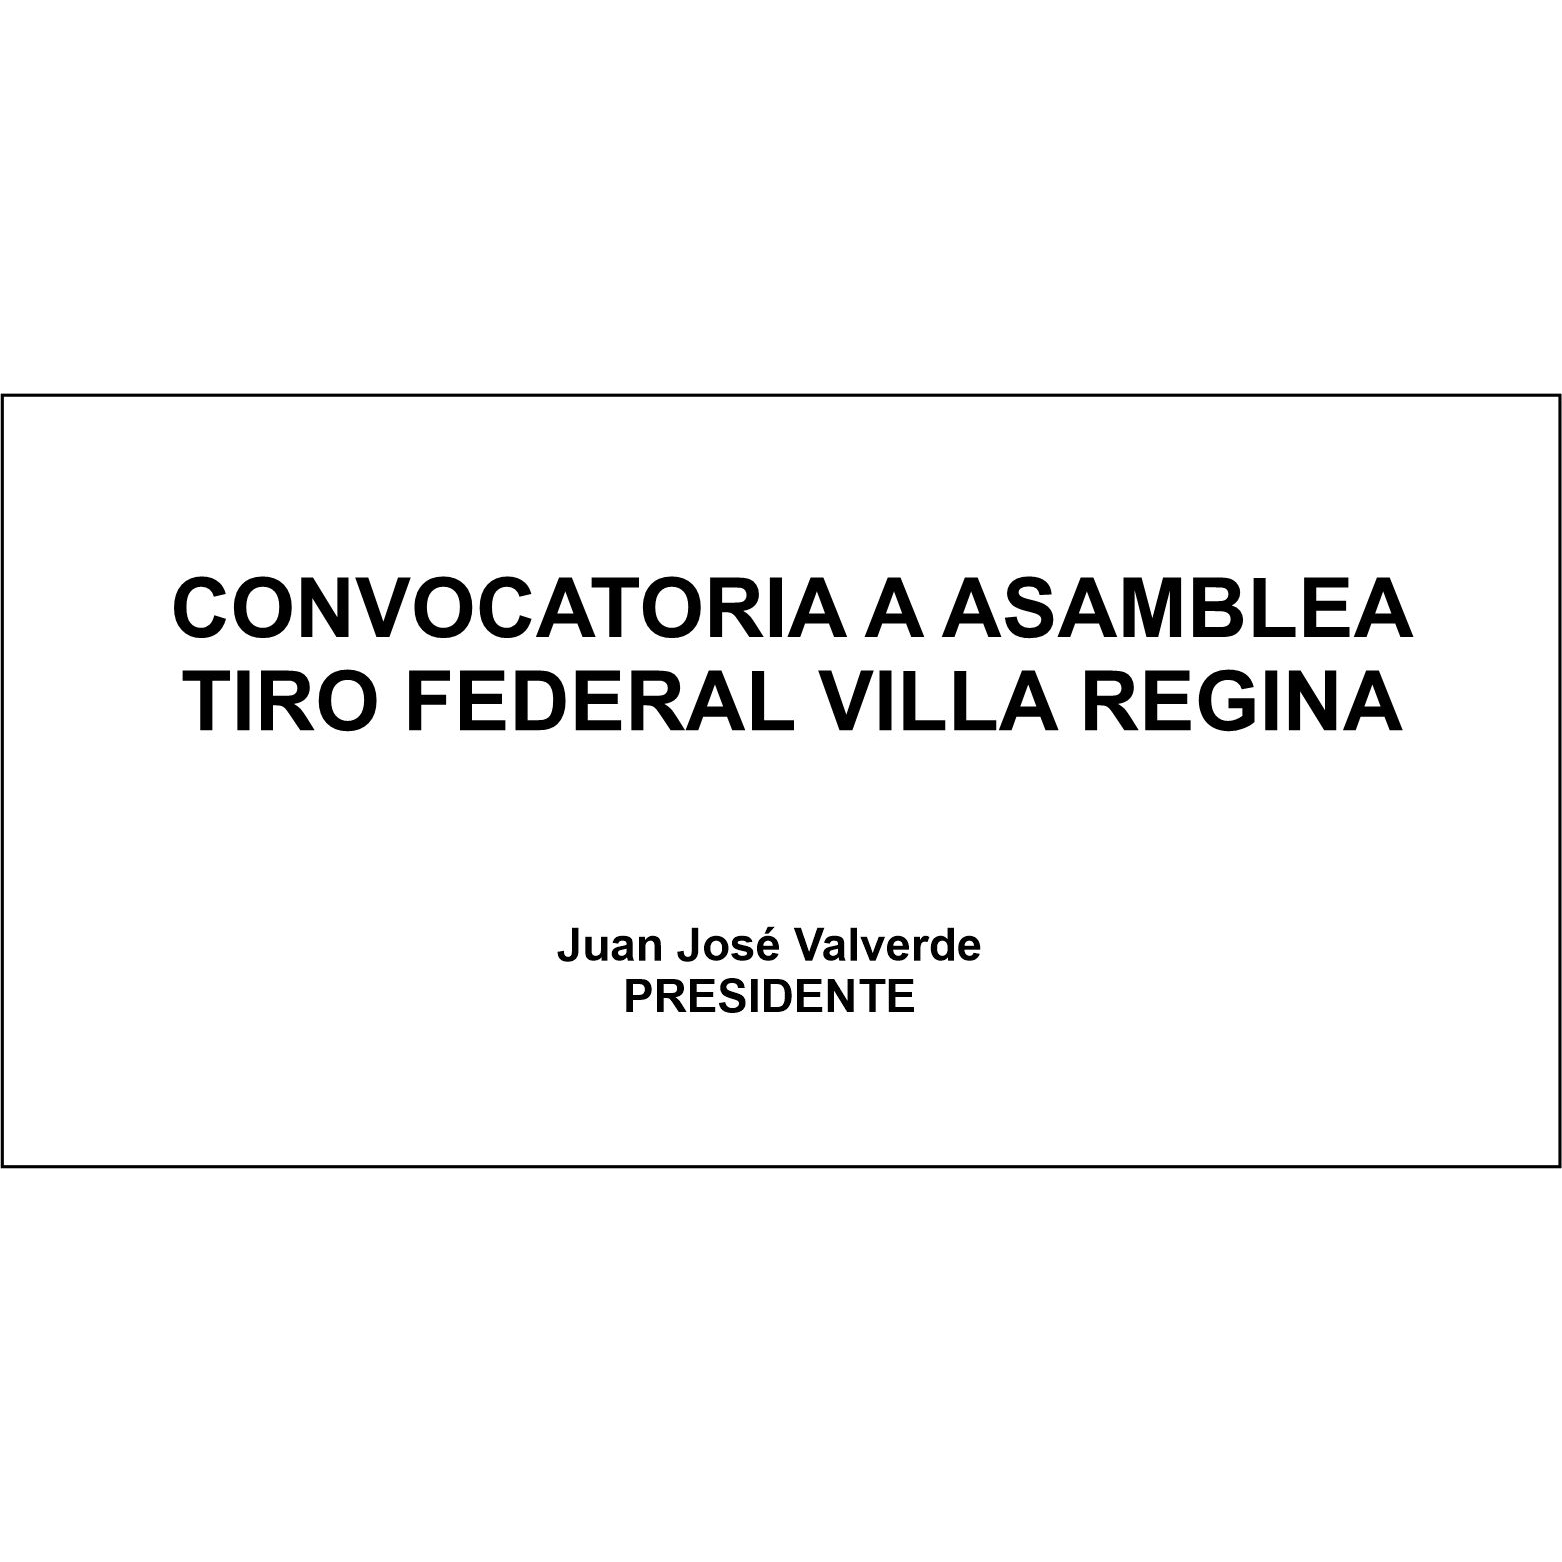 TIRO FEDERAL VILLA REGINA: CONVOCATORIA A ASAMBLEA